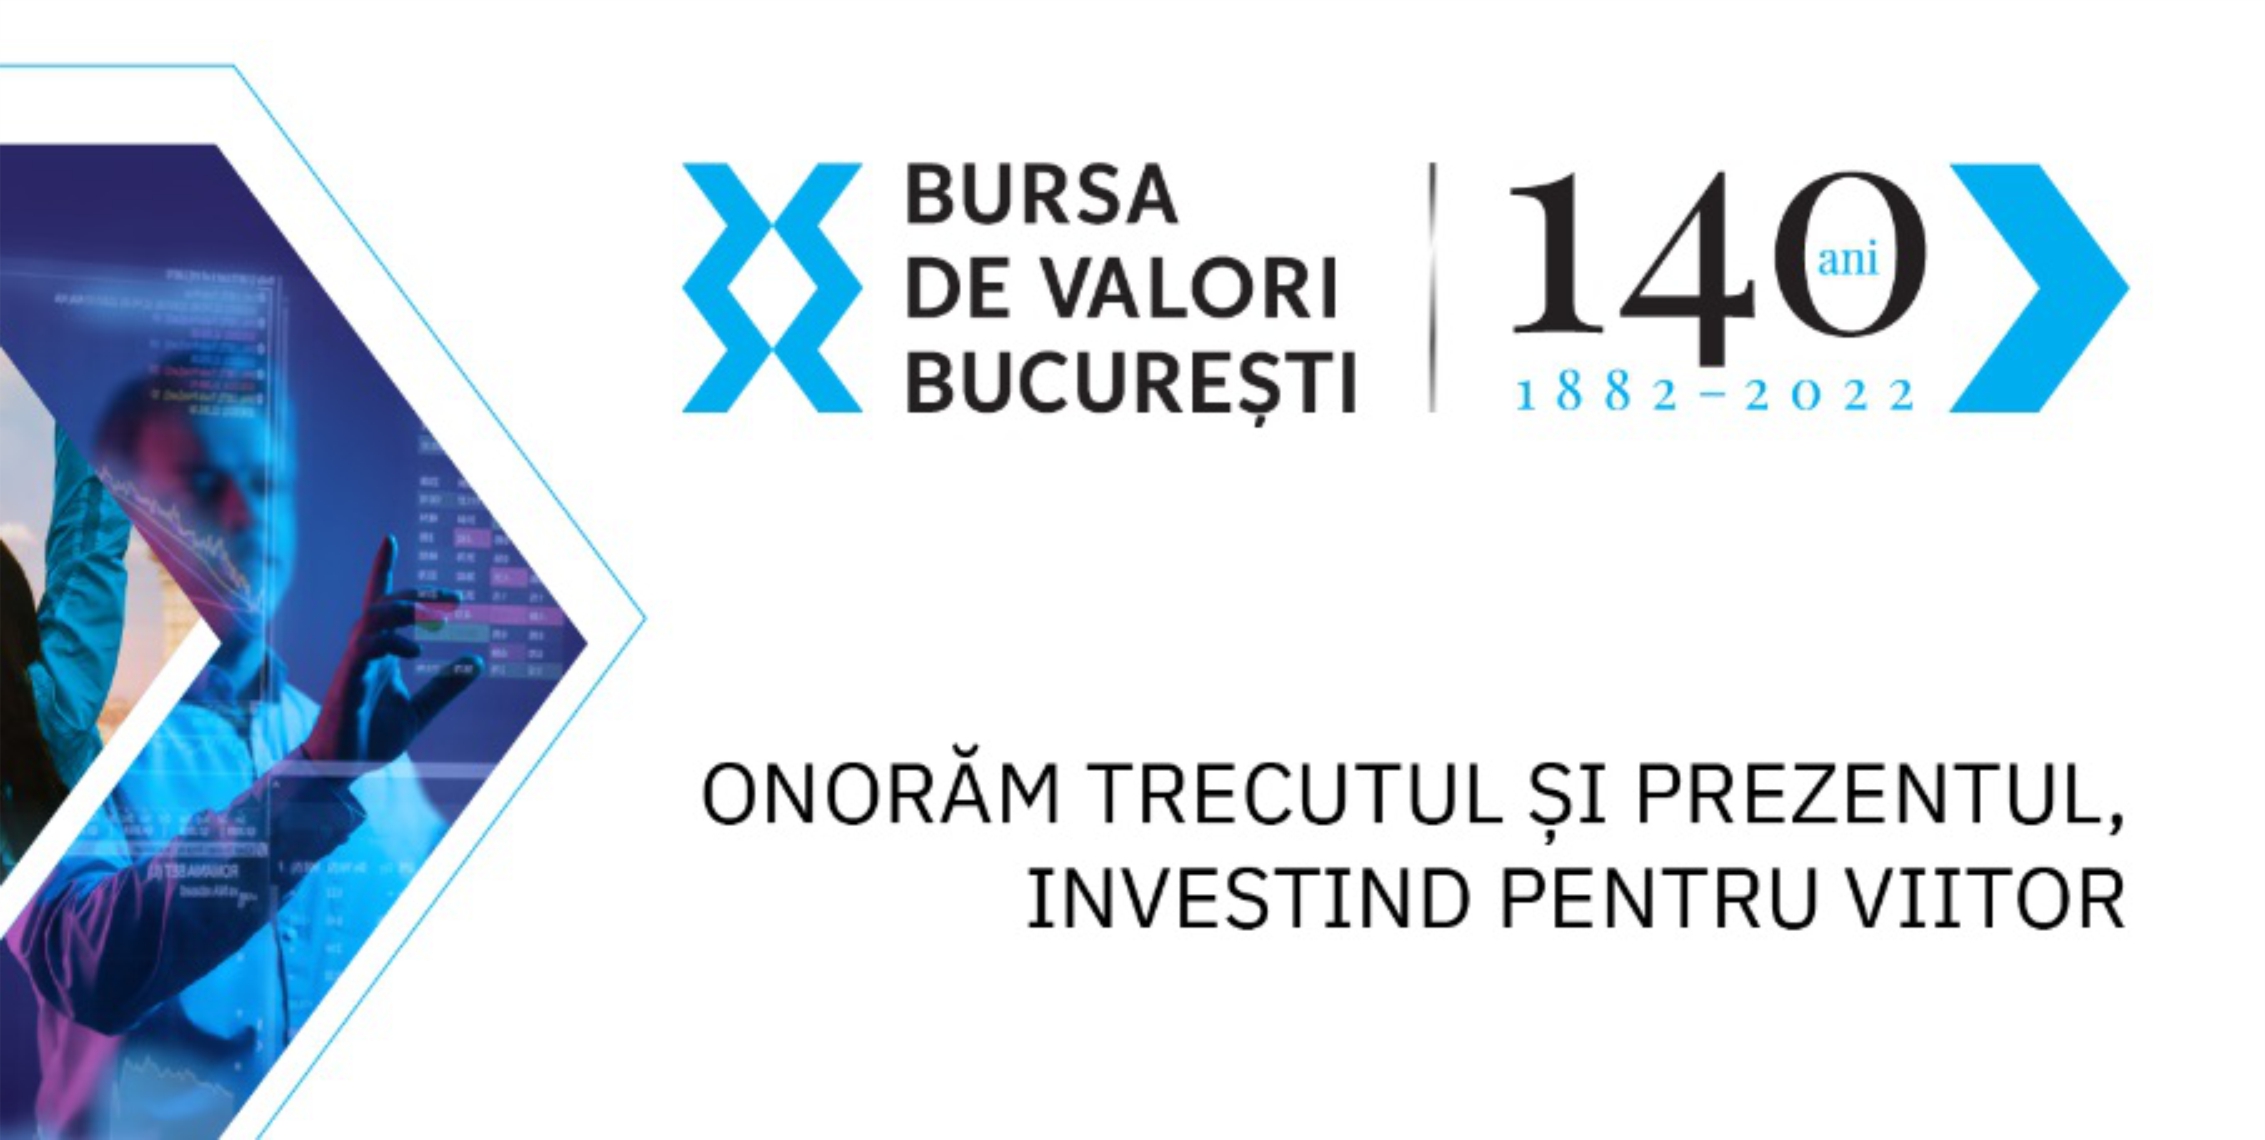 EVERGENT Investments este partener al evenimentului aniversar "Bursa de Valori Bucuresti 140 de ani"